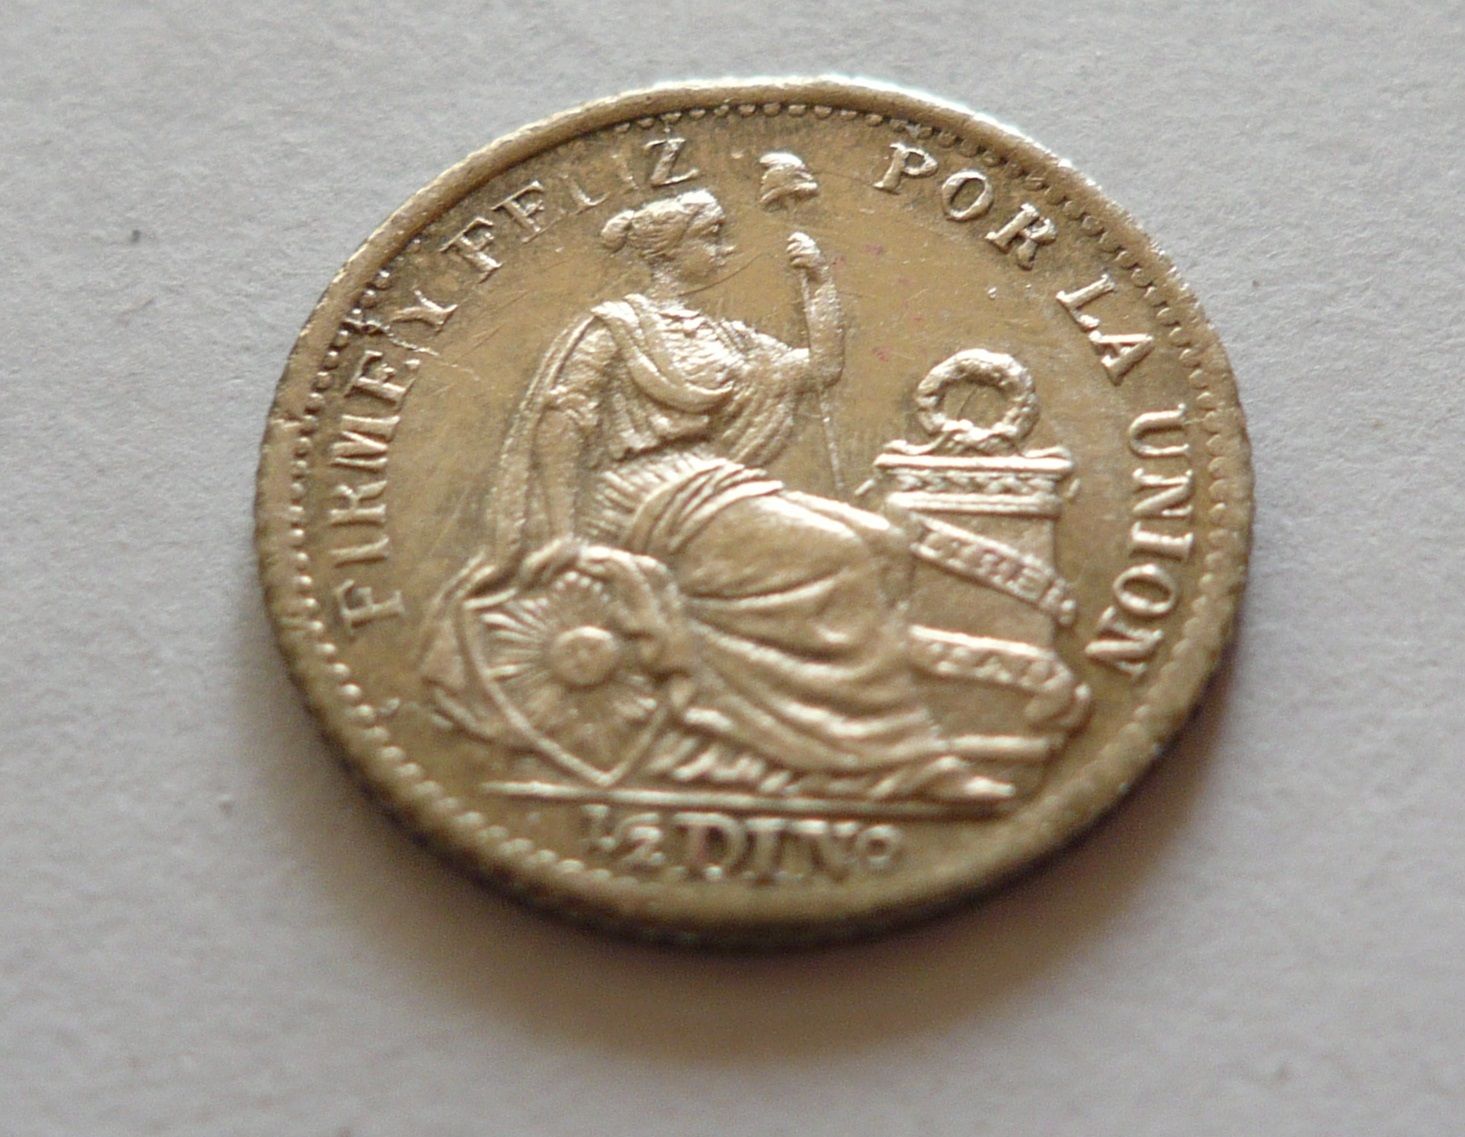 1/2-5 Cent, 1904, Peru